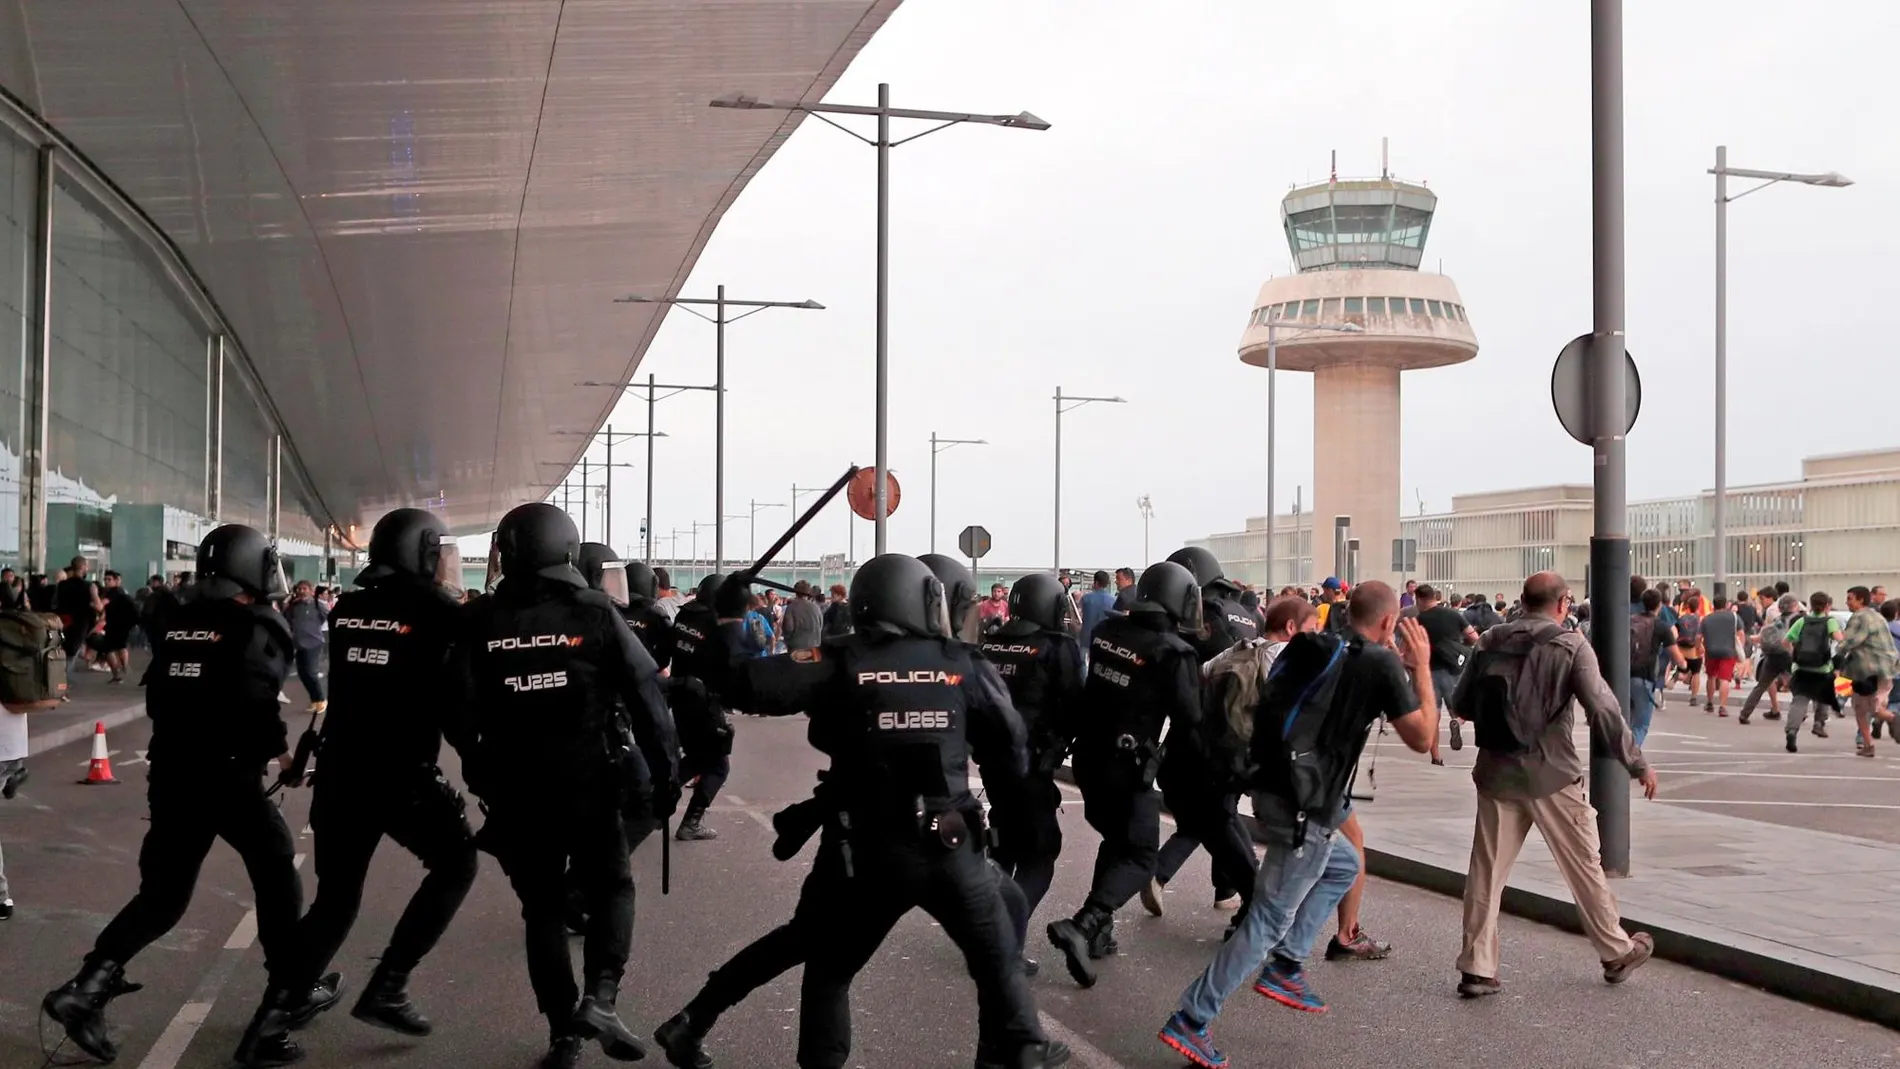 Miembros de la Policía Nacional cargan contra los centenares de personas que se agolpan ante el Aeropuerto del Prat. EFE/Alejandro García